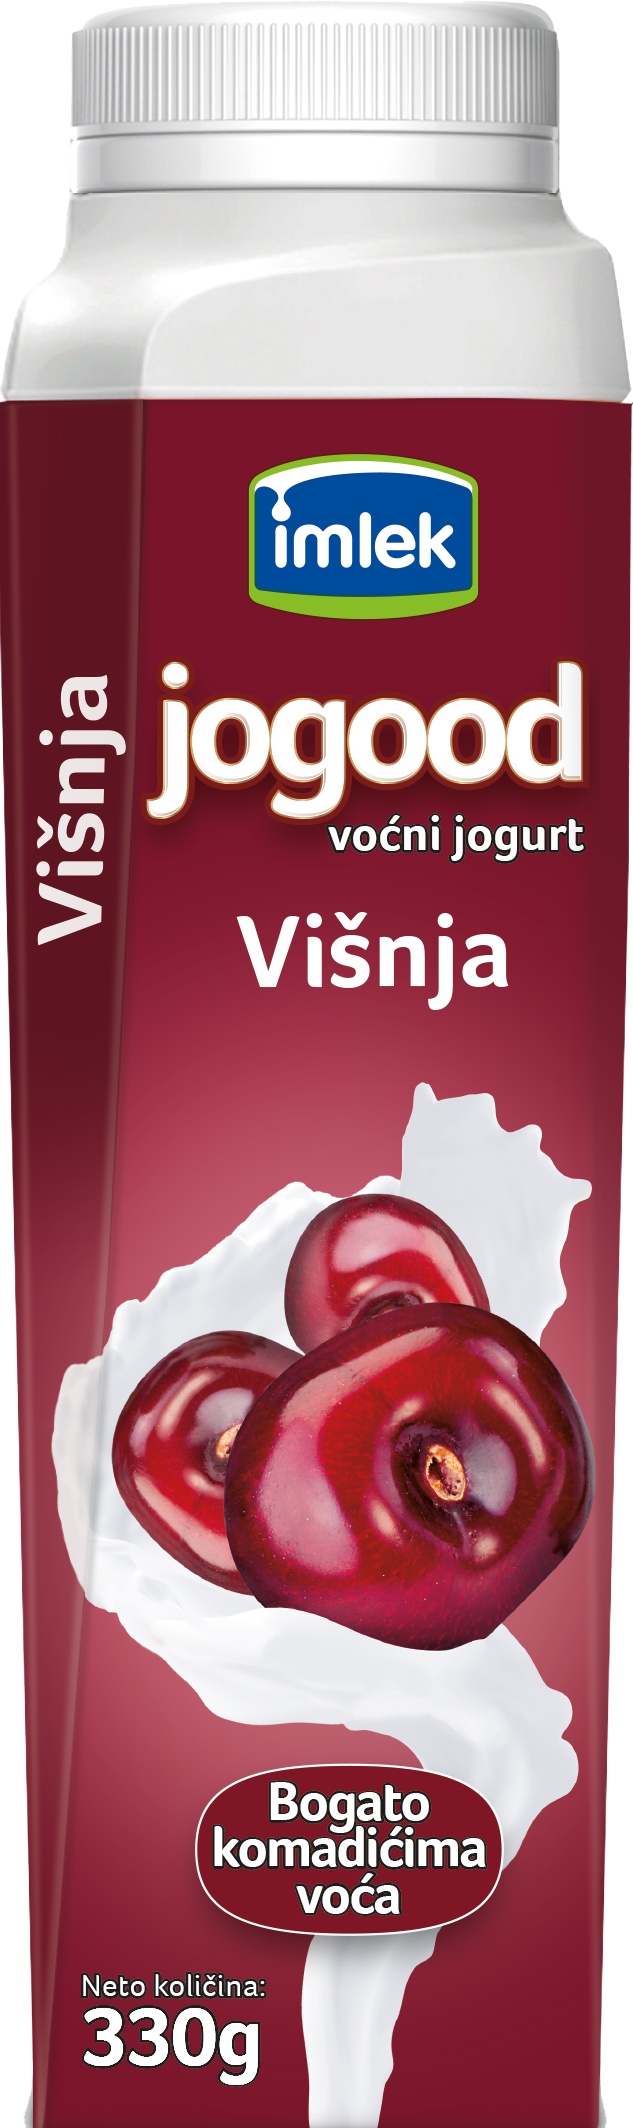 Slika za Voćni jogurt Jogood višnja 3.2%mm 330g